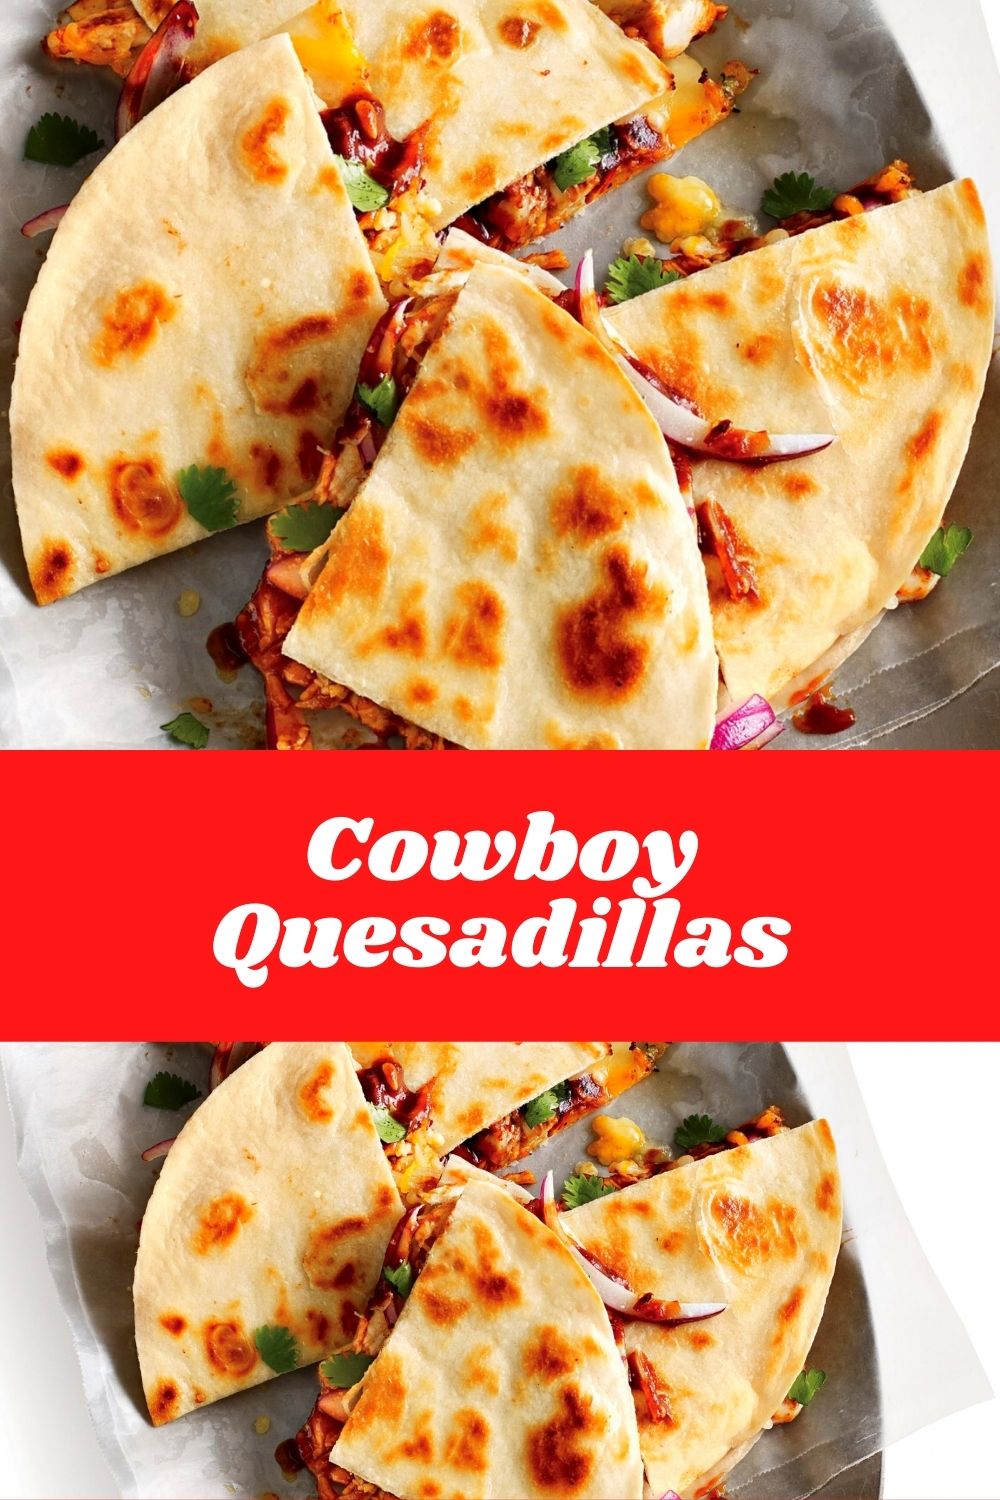 Cowboy Quesadillas #quickrecipes #cheaprecipes #goodrecipes